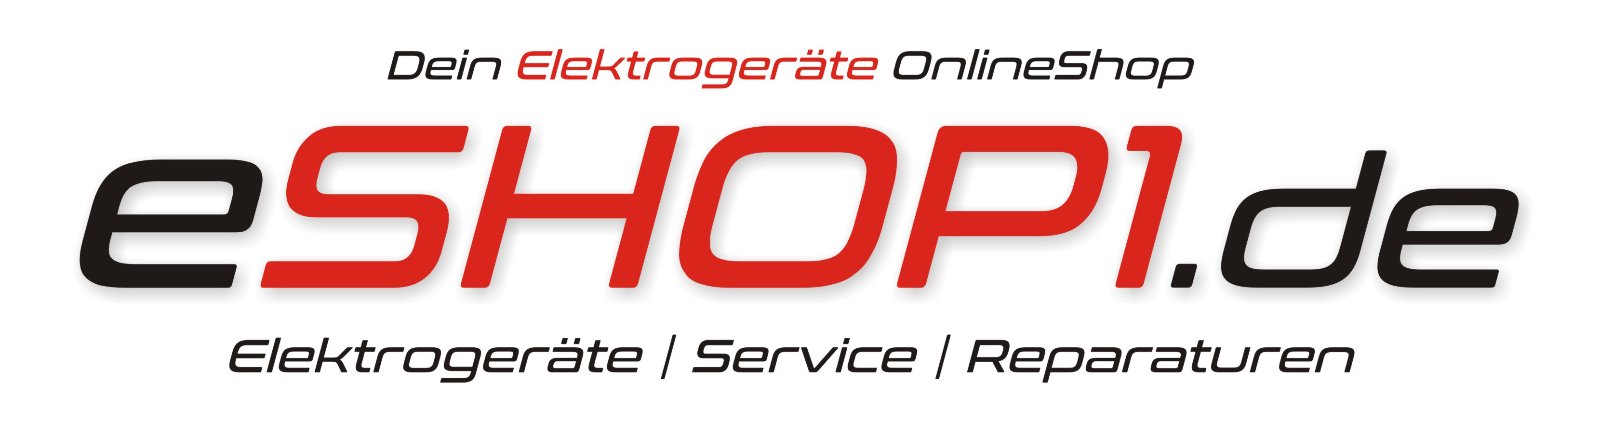 eshop1.de onlineshop logo